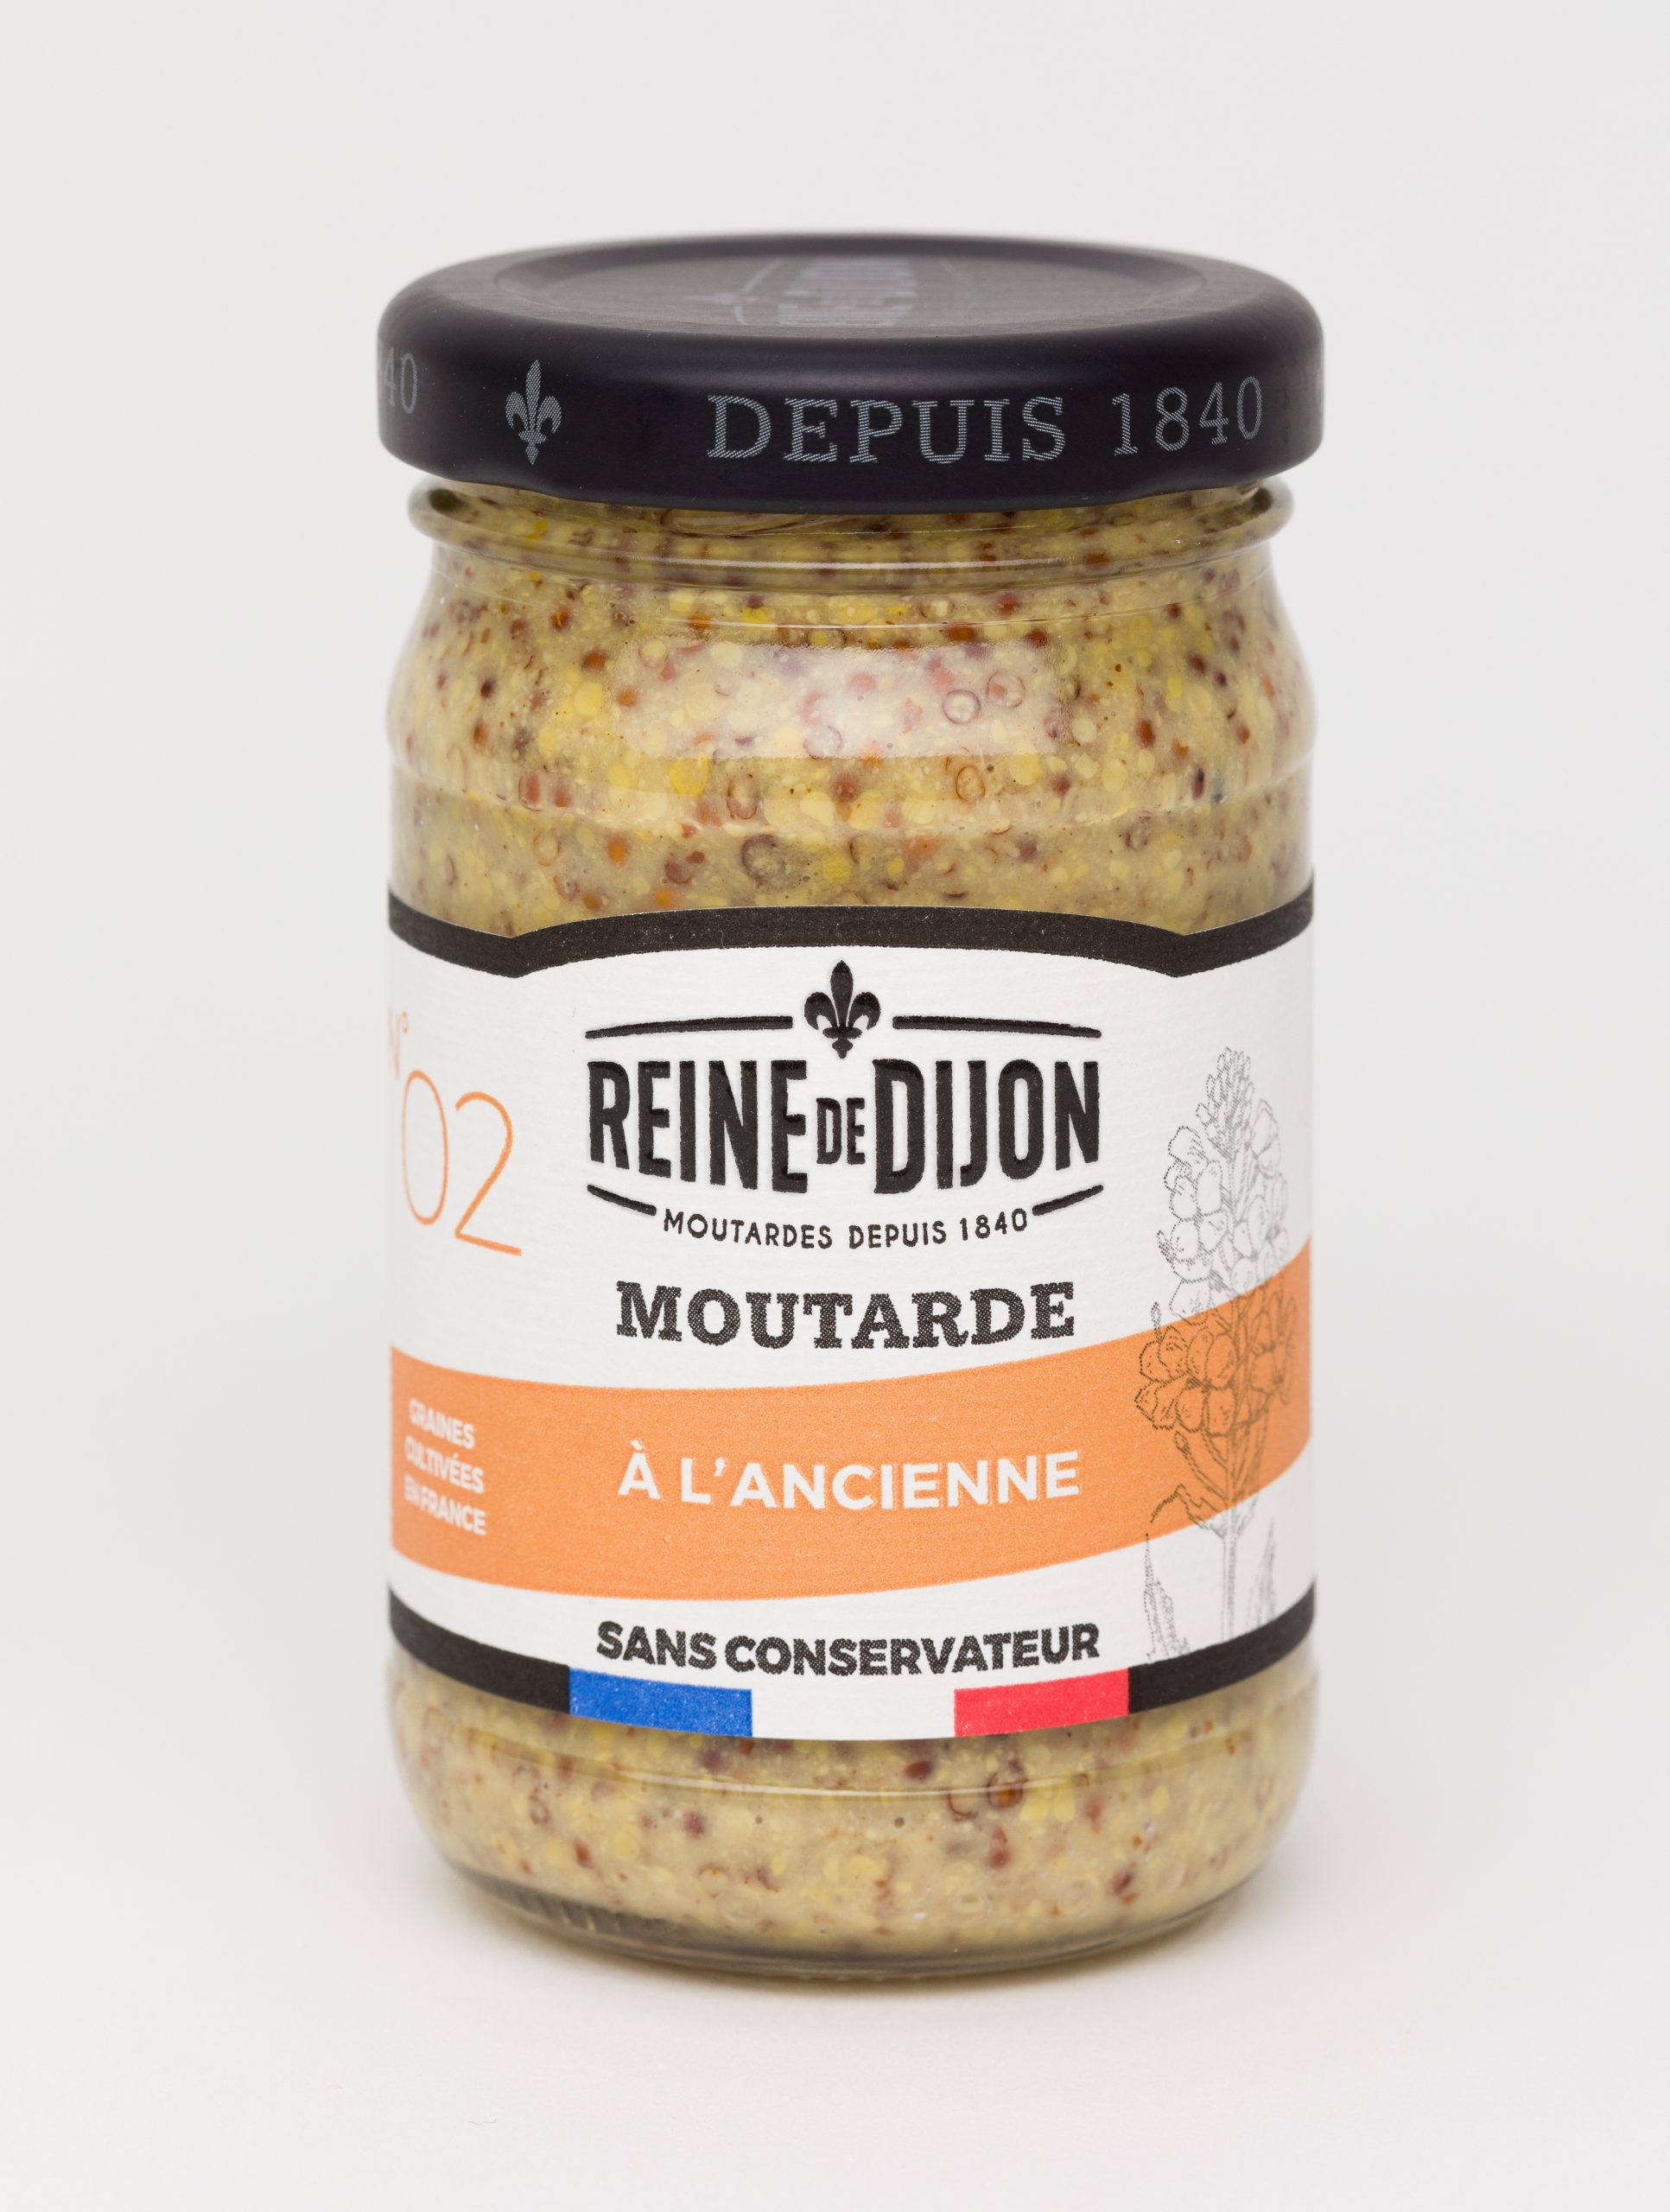 Reine de Dijon GMS Blanc 02 Moutarde a╠C lOCOancienne 95g  scaled - La moutarde aux graines 100% françaises